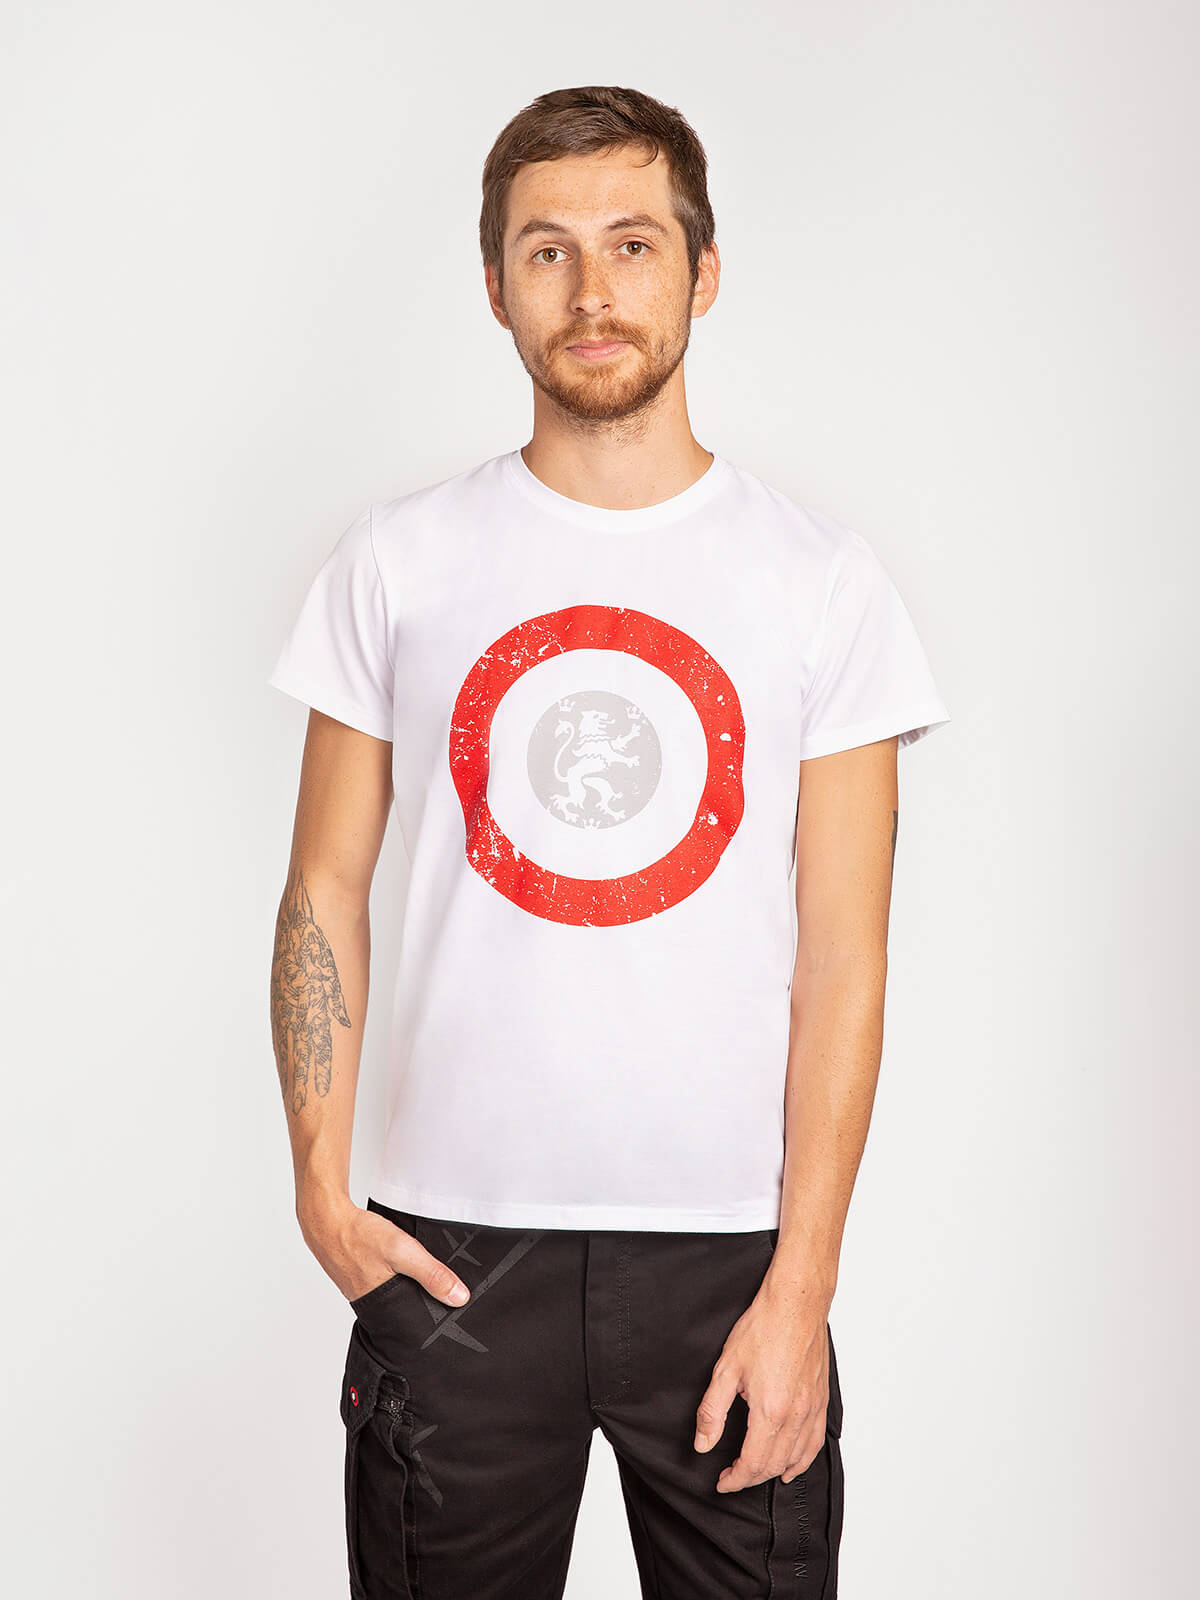 Men's T-Shirt Lion (Roundel). Color white. Material: 95% cotton, 5% spandex.